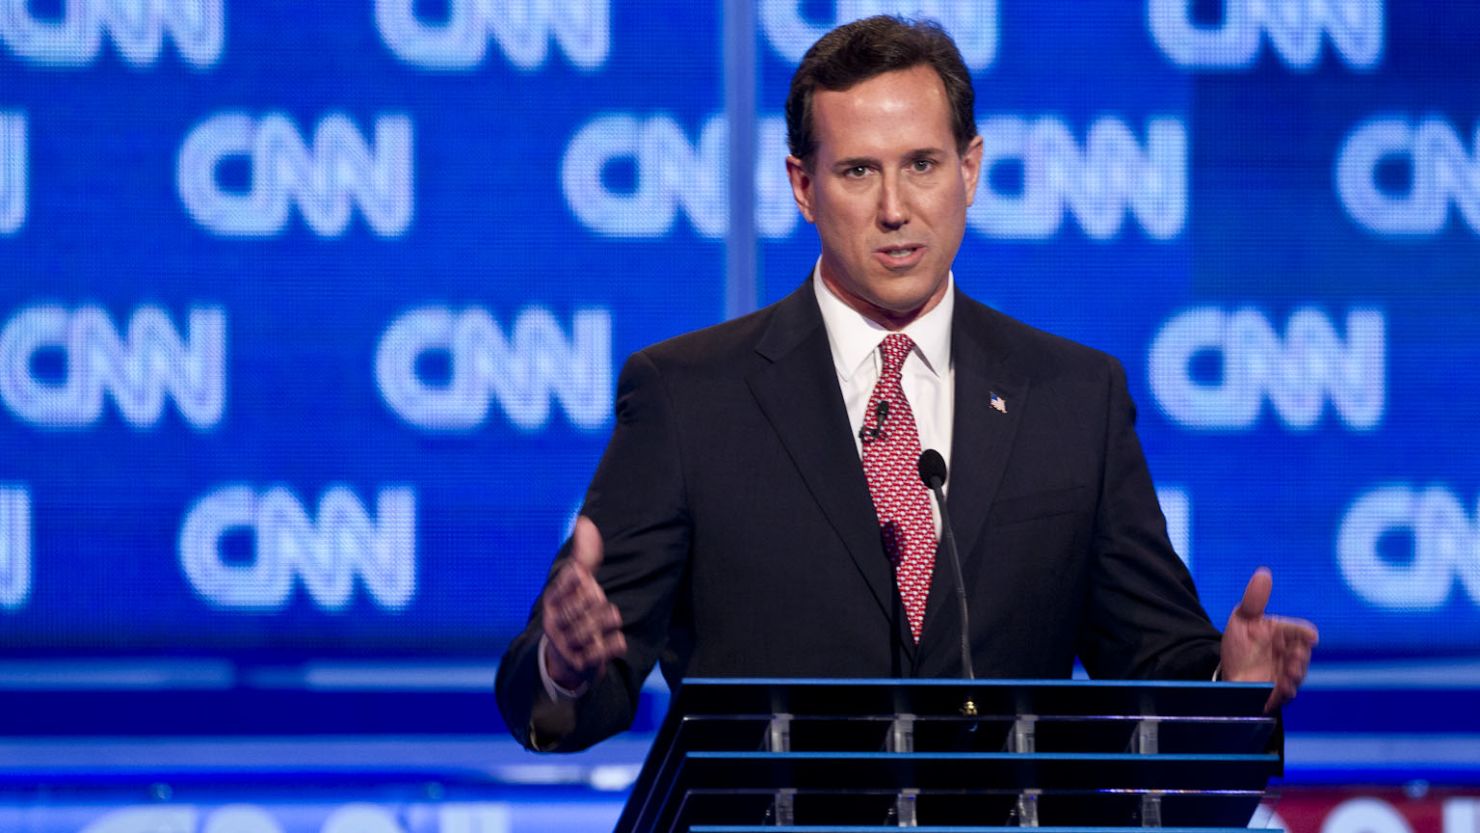 Former Sen. Rick Santorum scored strongly at Thursday night's CNN South Carolina Republican debate, says Todd Graham.